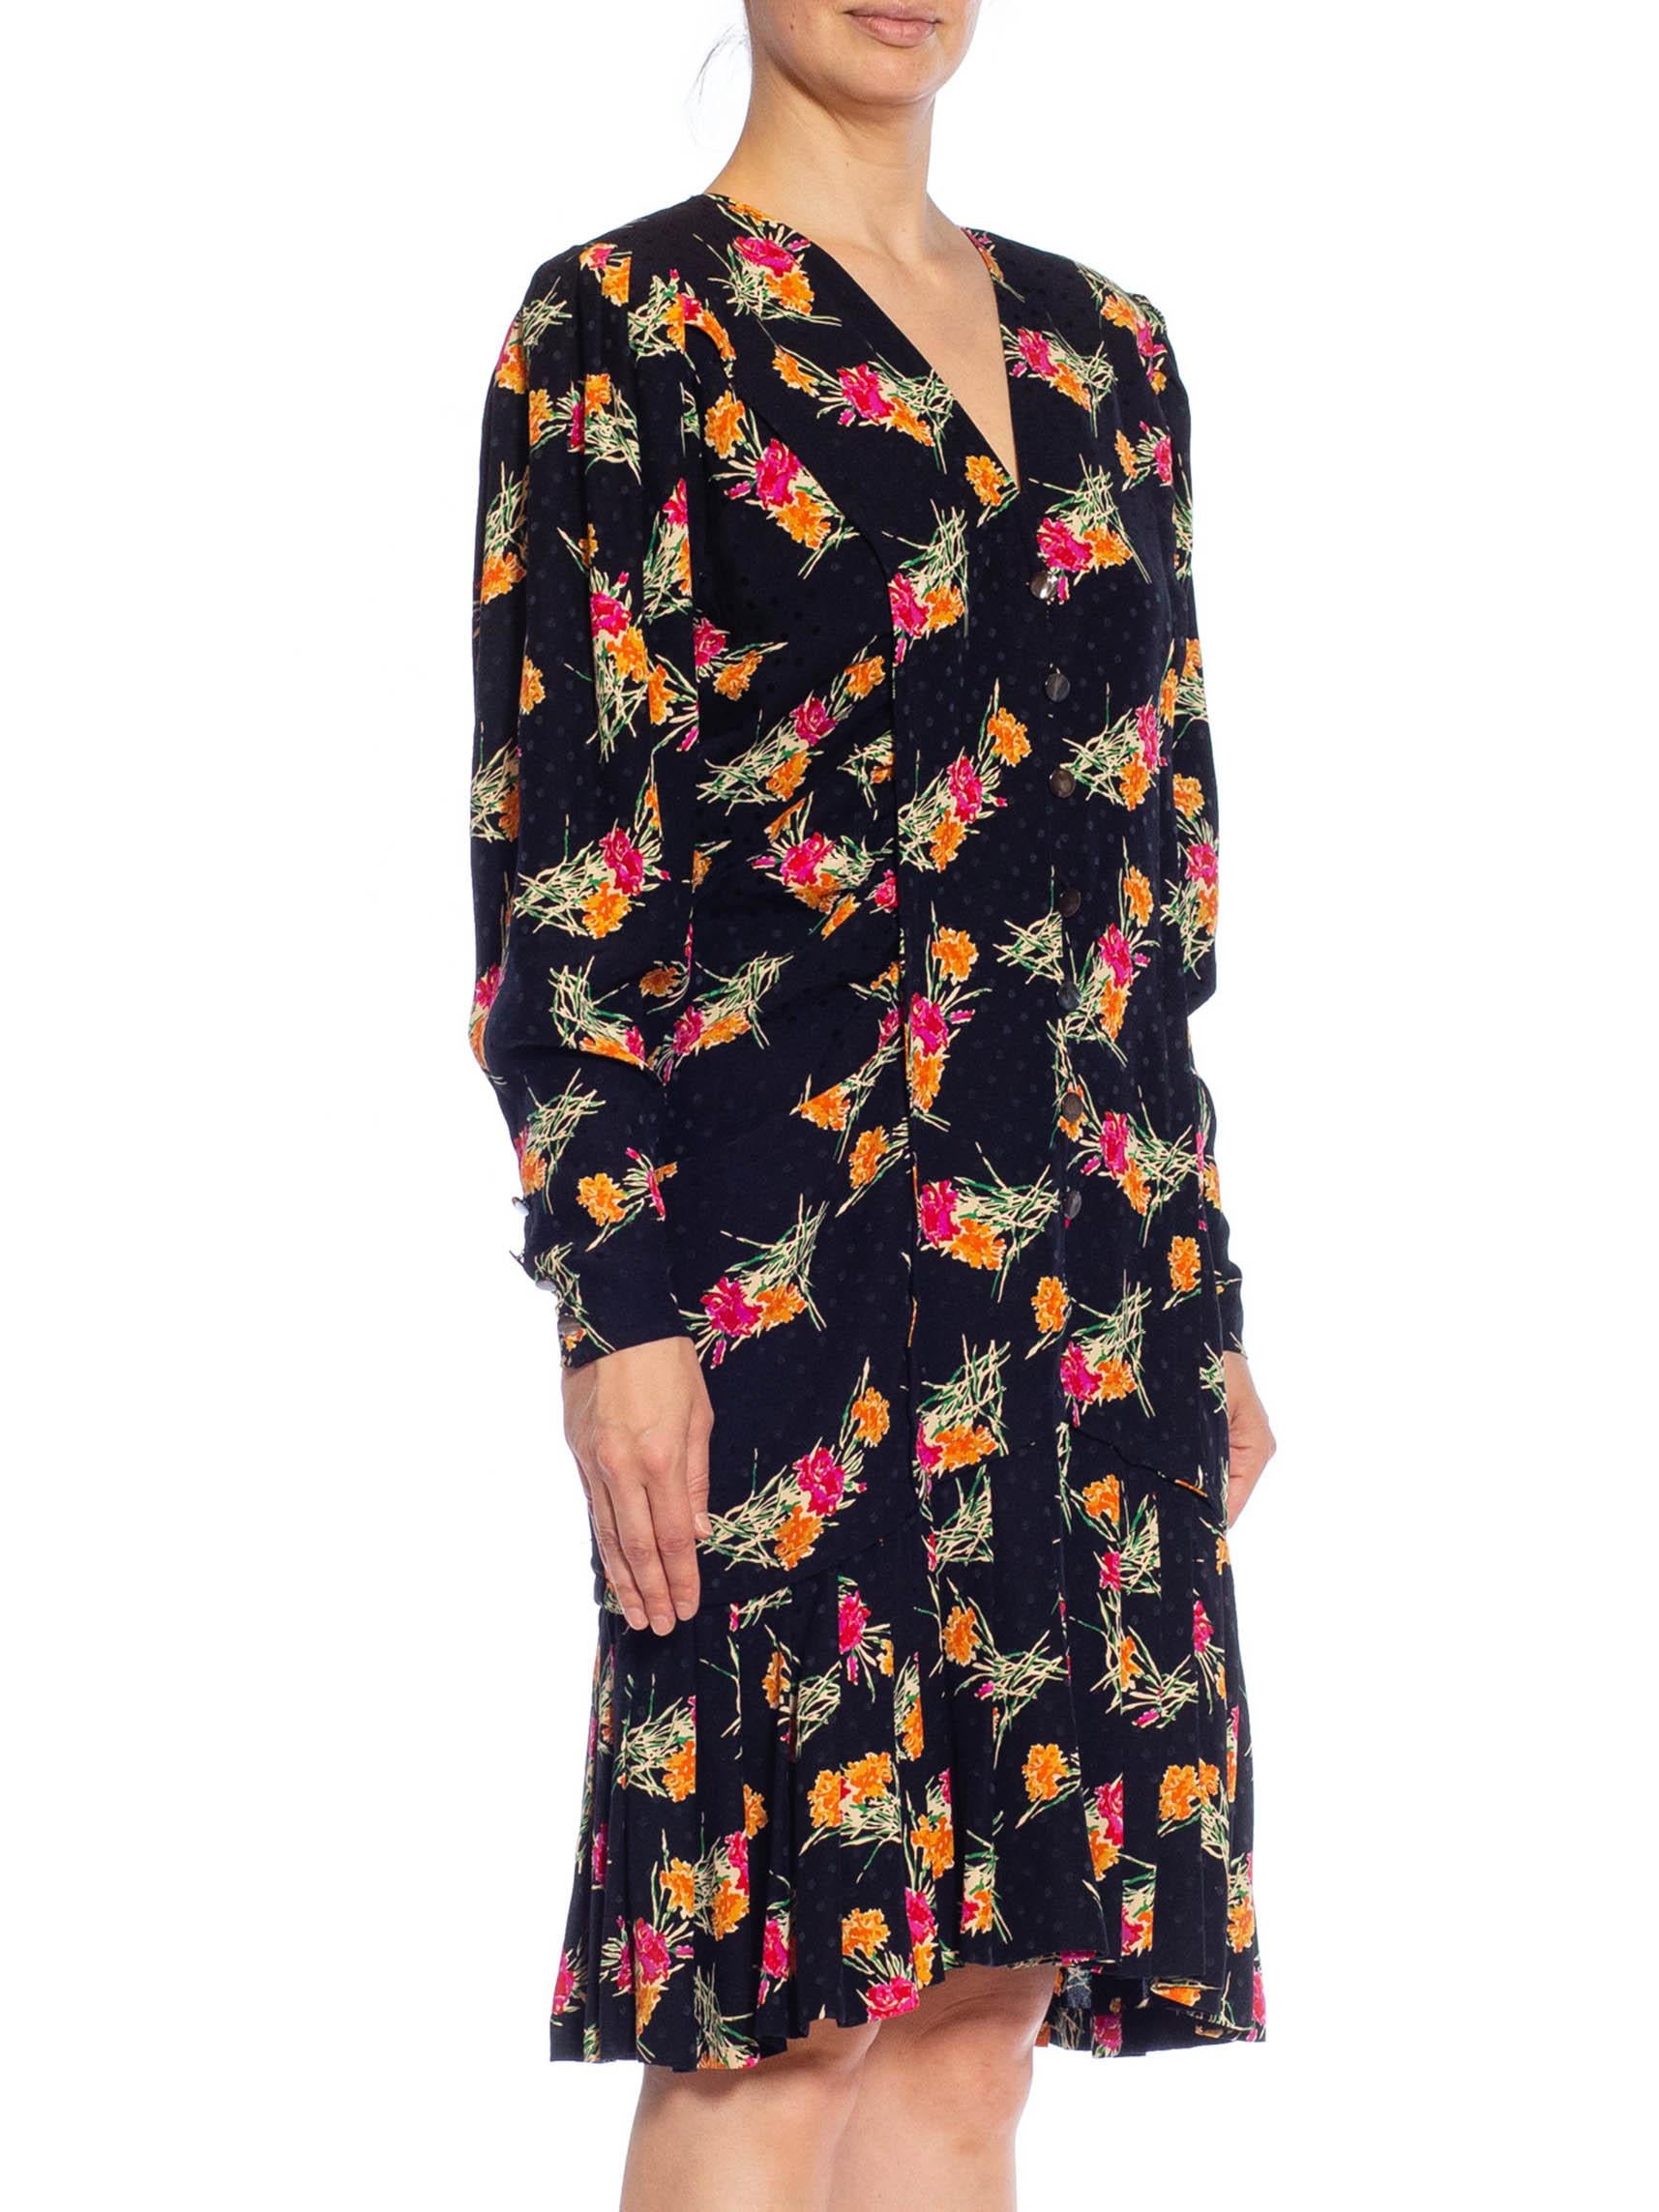 1980S EMANUEL UNGARO Black, Pink & Orange Floral Silk Long Sleeve Dress With Po For Sale 1